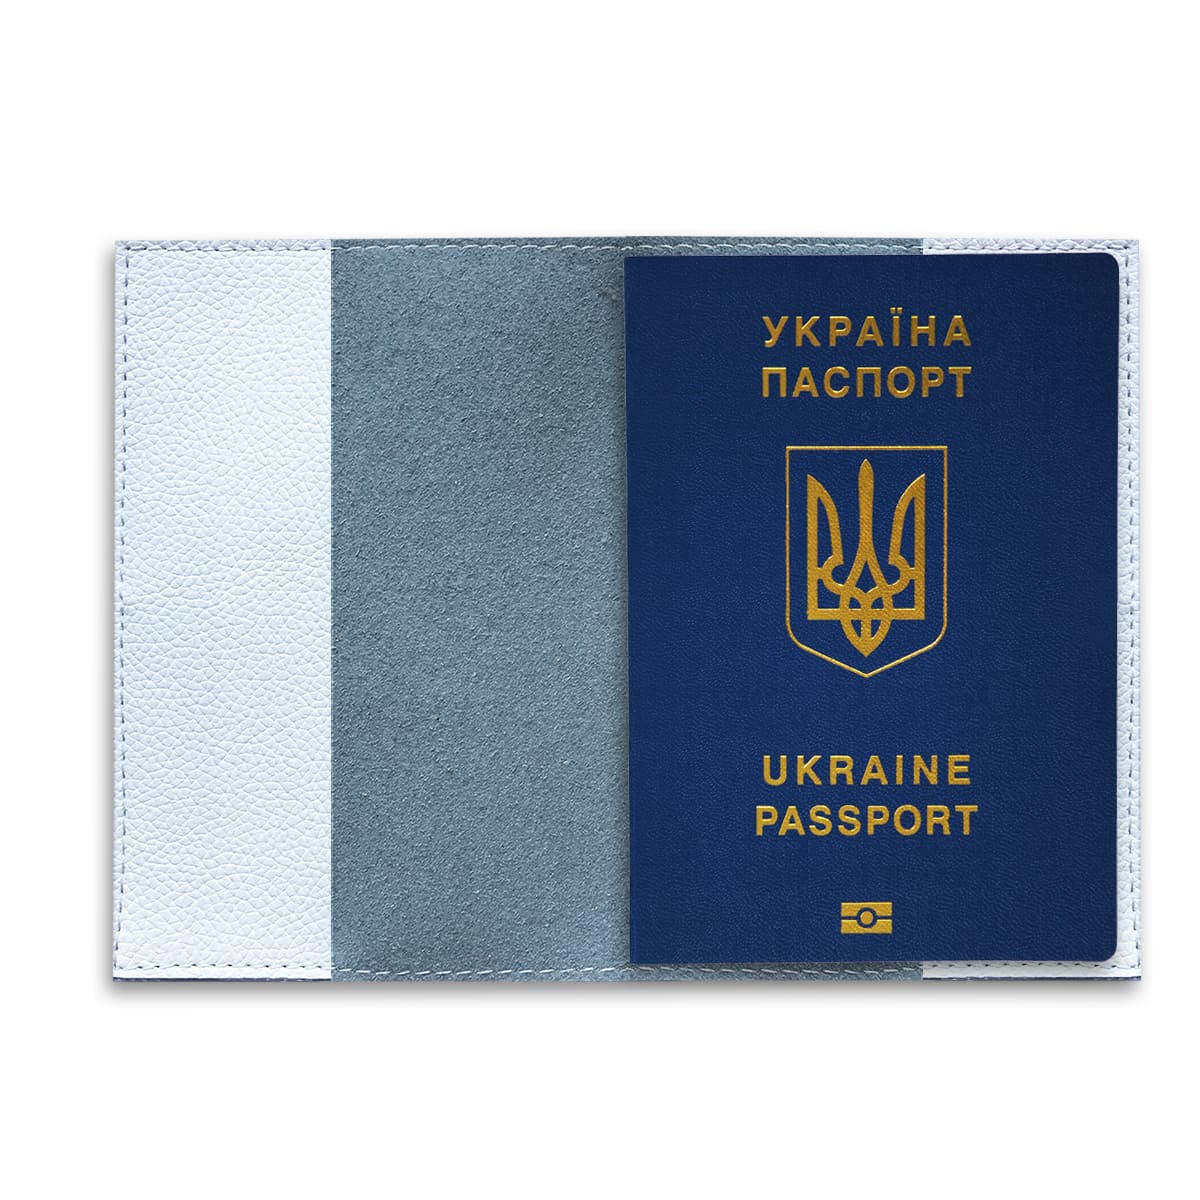 Обкладинка на паспорт з власним дизайном - Gisolo